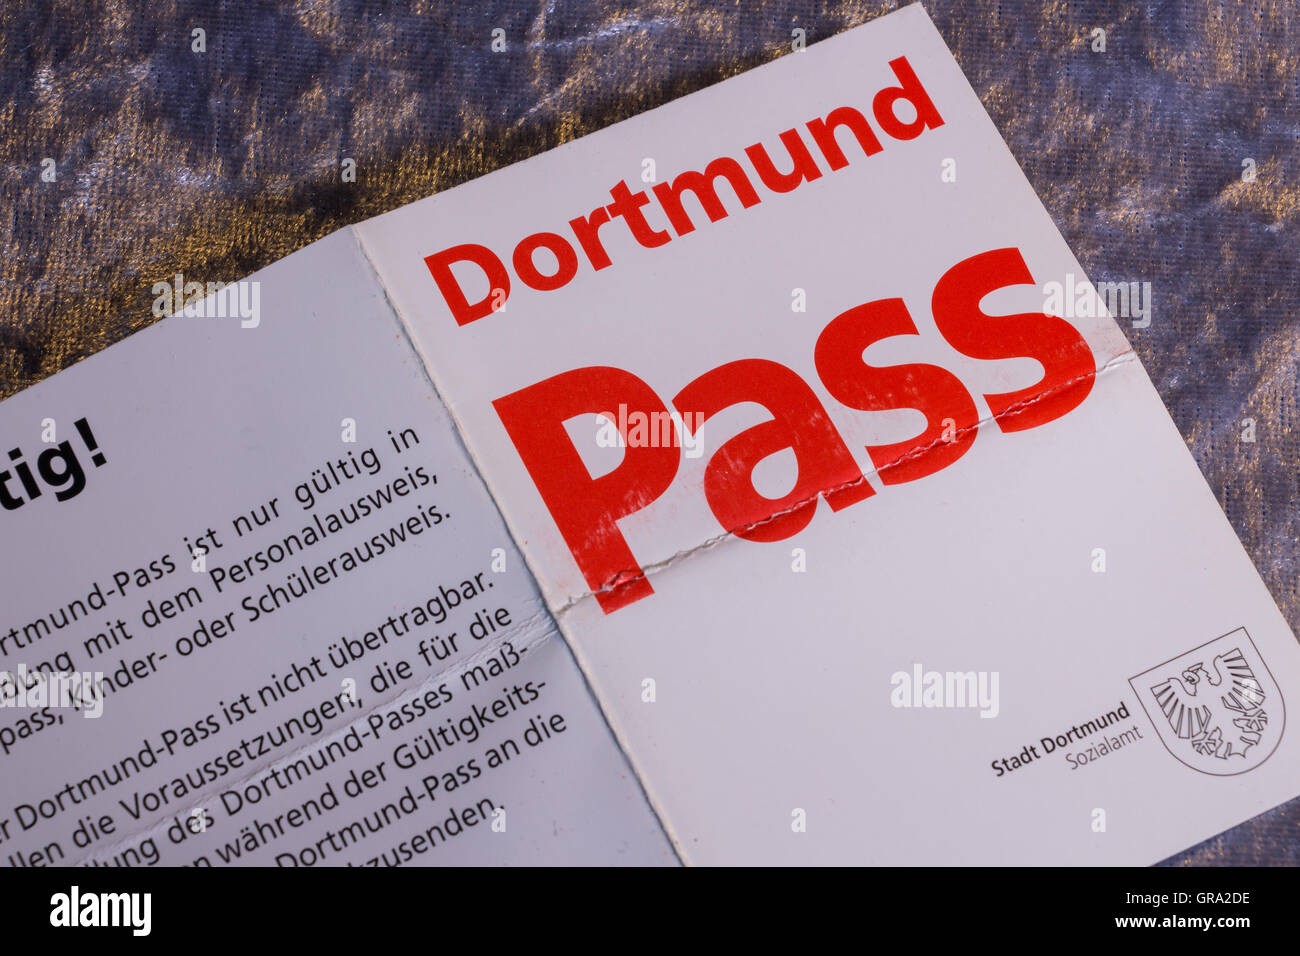 Dortmund Pass Stock Photo